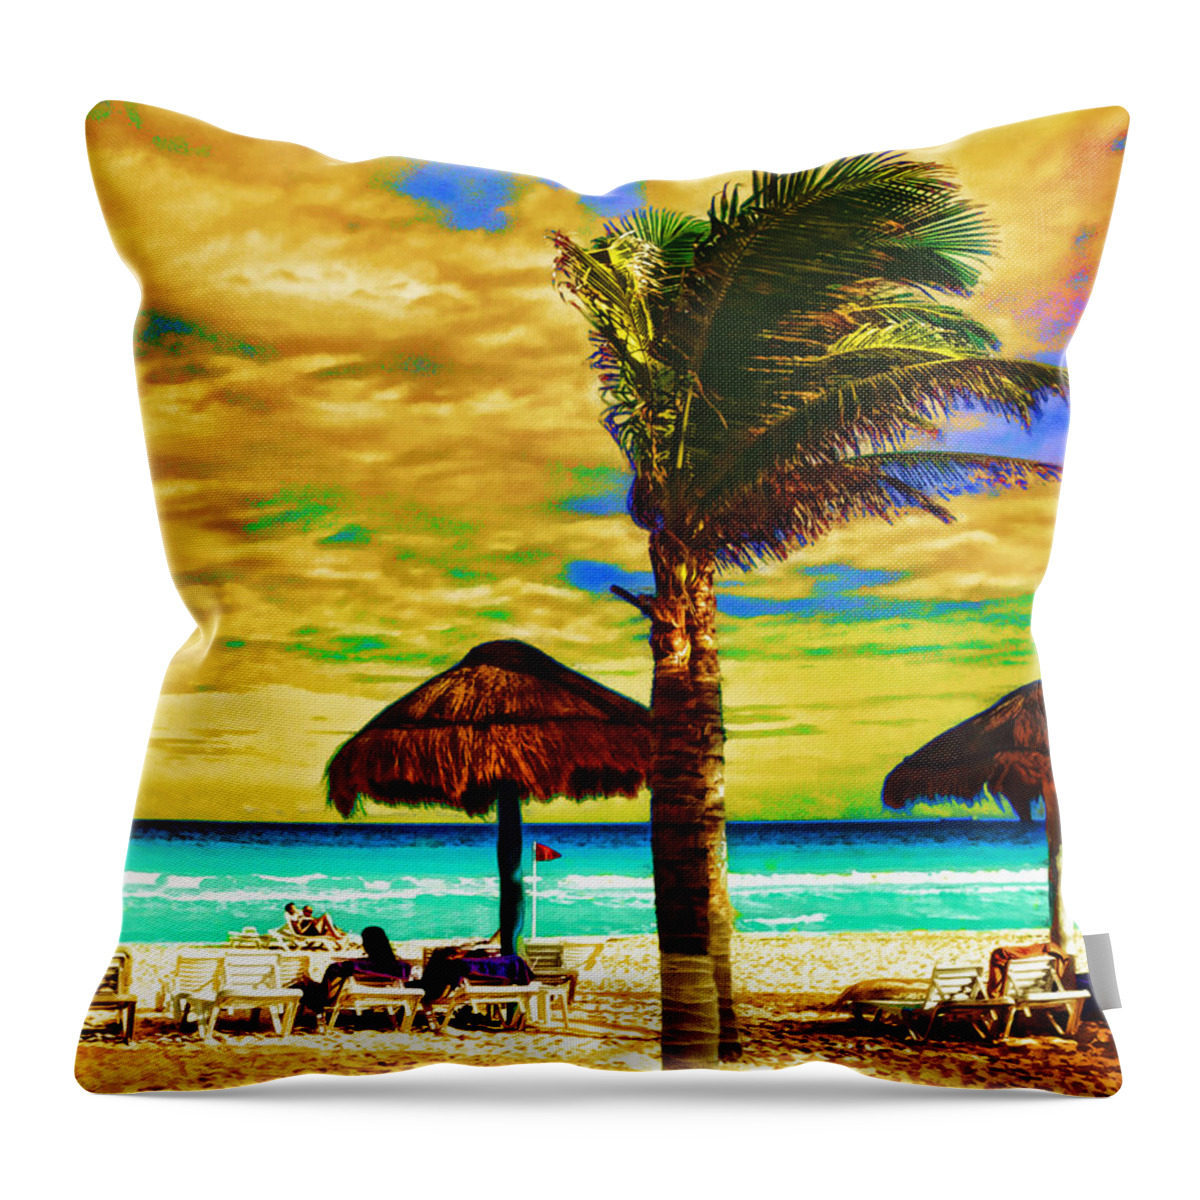 Beach Throw Pillow featuring the photograph Tropical Fantasy Beach Art by Ann Powell